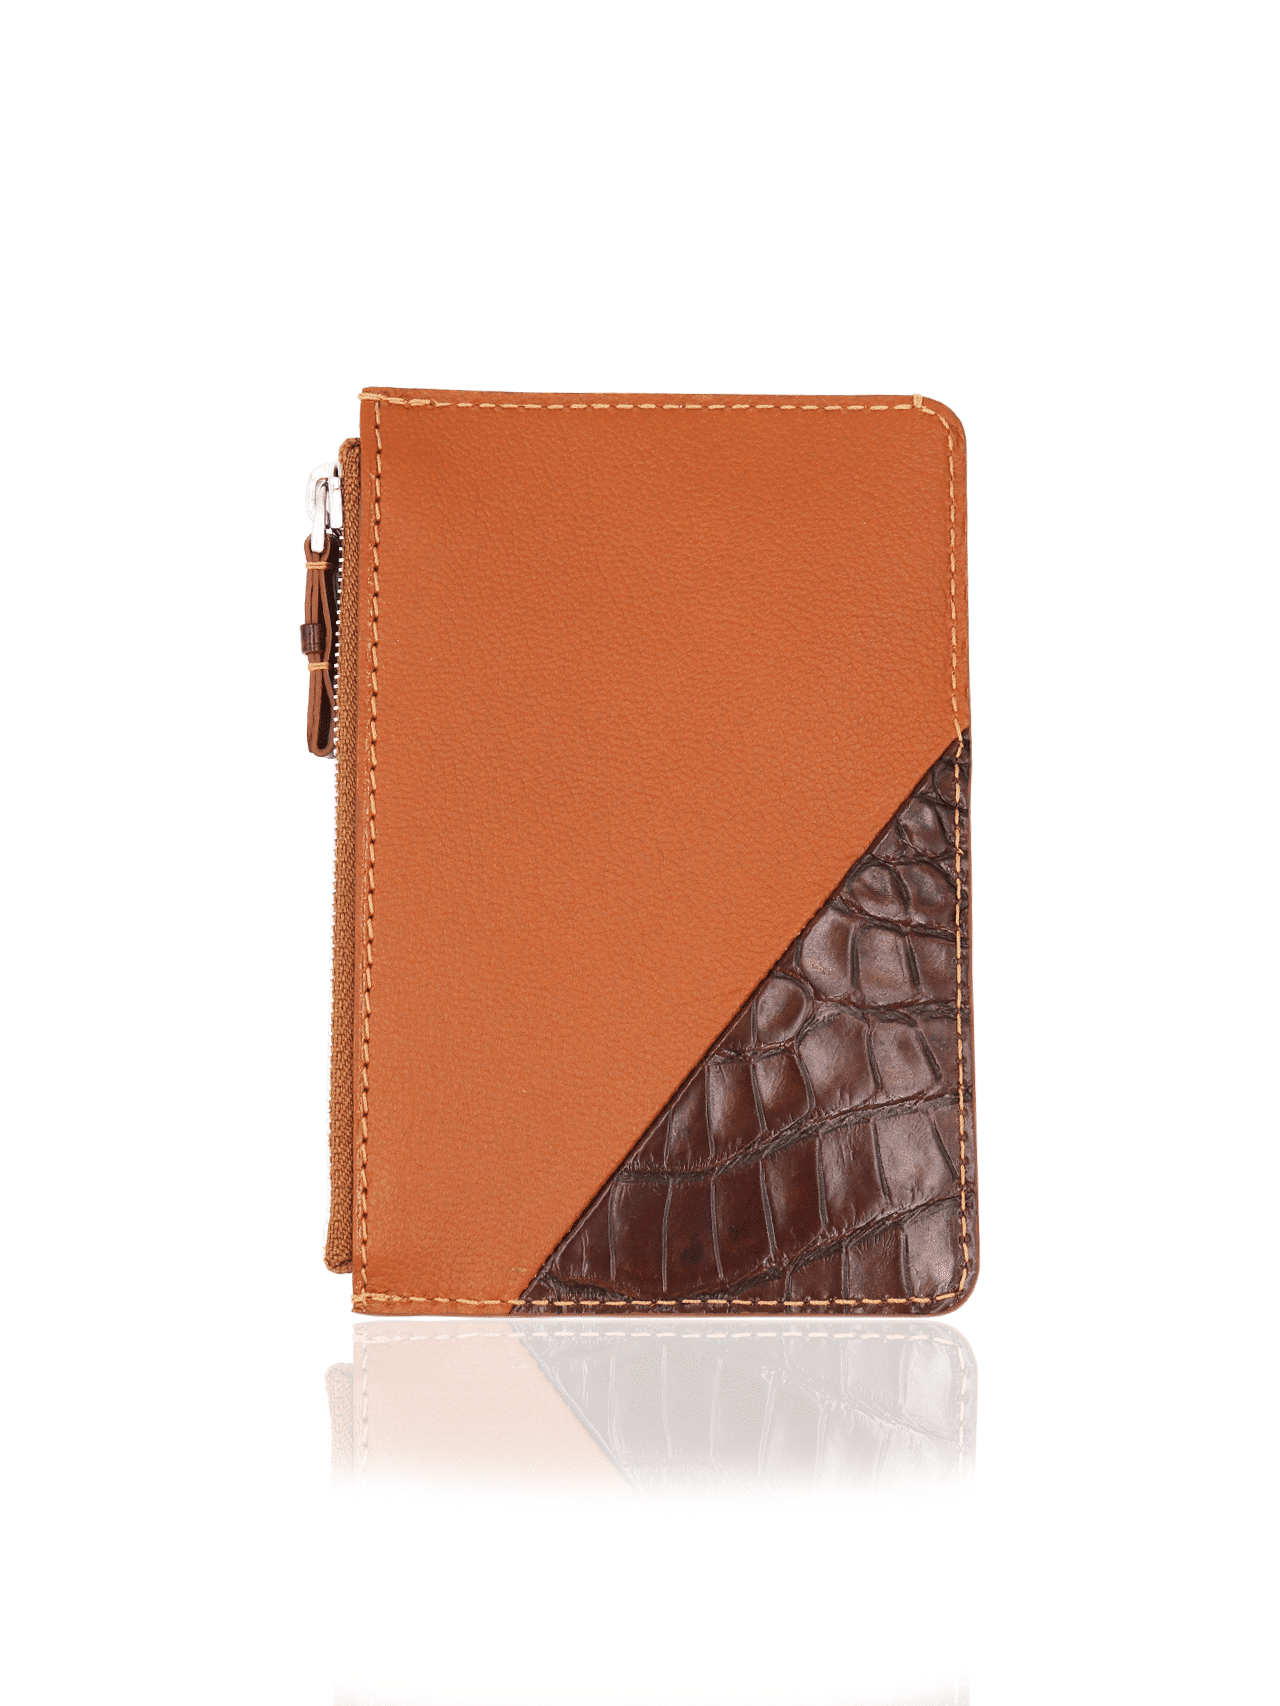 wallet zip zippy crocodile orange brown